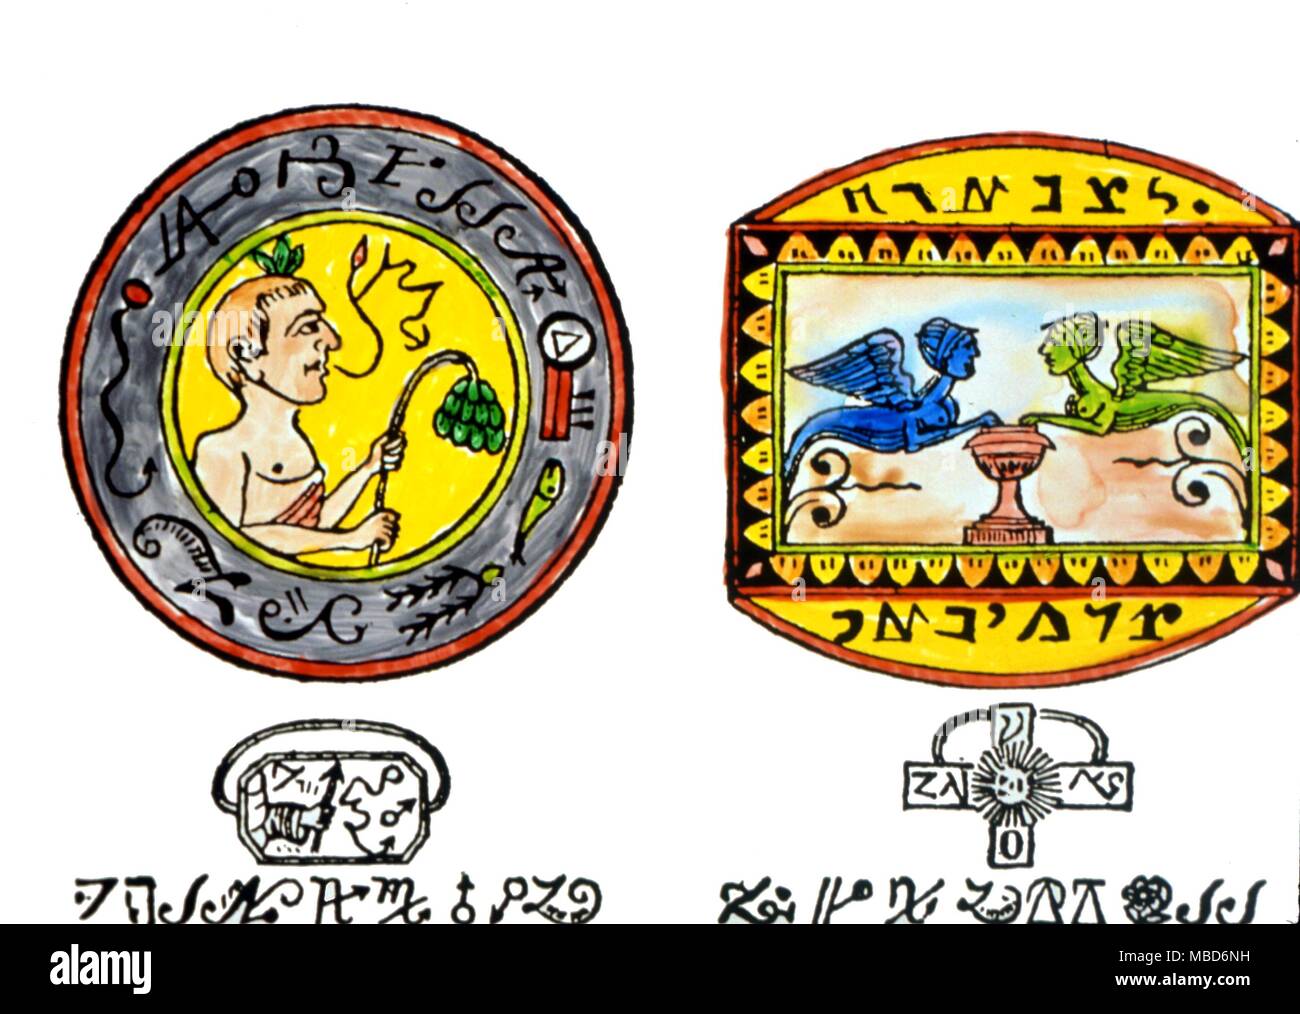 Alfabetos mágicos - Mágico sigils, del secreto-script letras, grabado en un talismanic anillo en el grimorio El sabio de las pirámides. Foto de stock